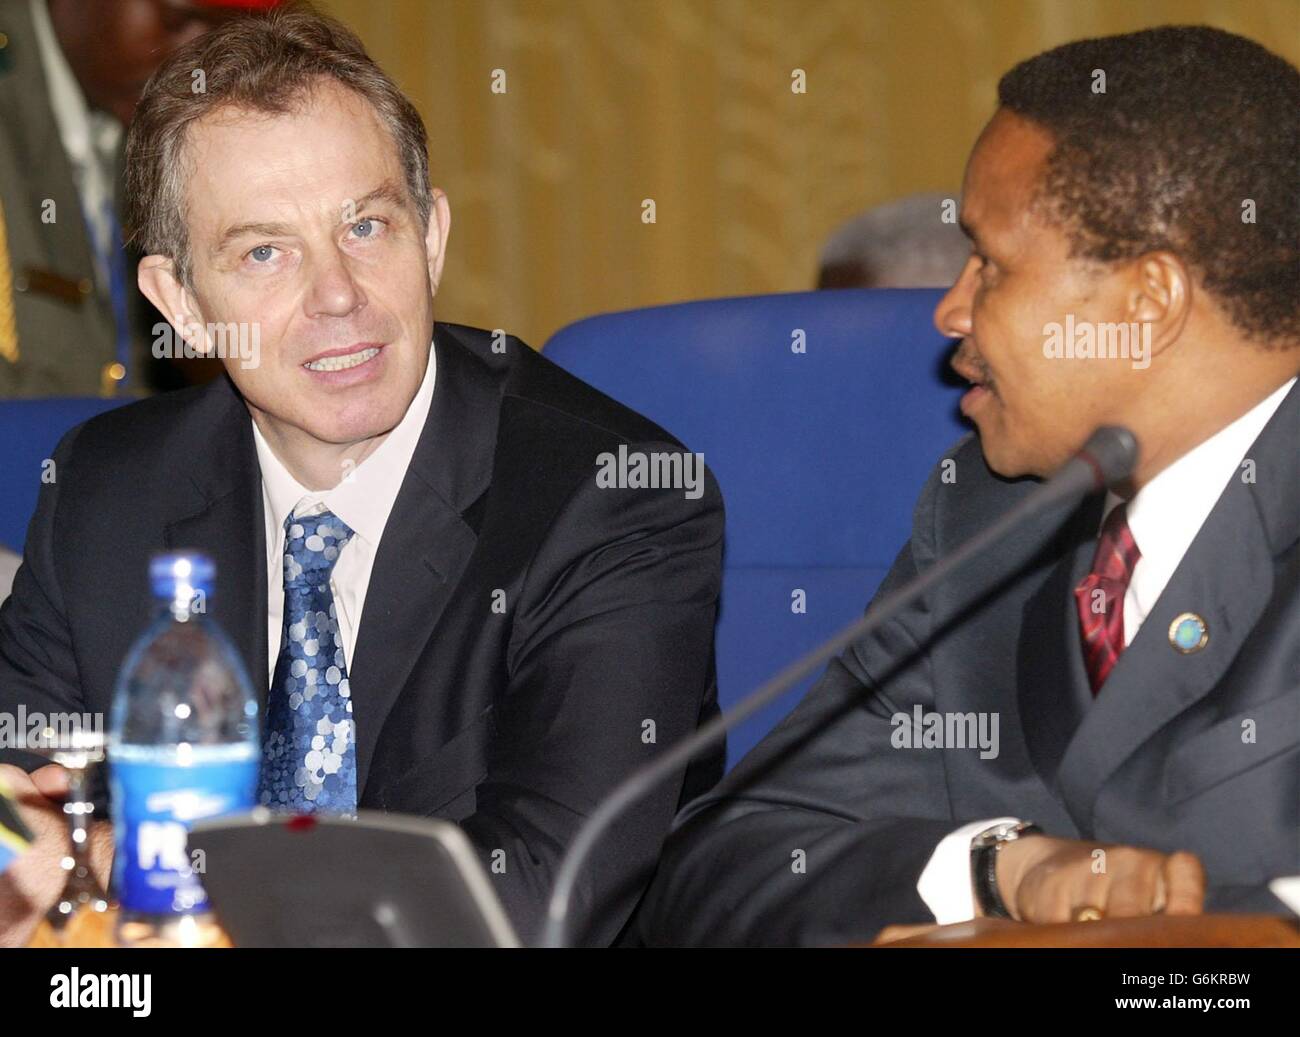 Der britische Premierminister Tony Blair (L) spricht mit dem tansanischen Präsidenten Benjamin William Mkapa zu Beginn der ersten Exekutivsitzung des Commonwealth-Treffens der Regierungschefs in Abuja, Nigeria. Blair hat heute nicht die rasche Entschließung erhalten, die er wollte, dass Simbabwe die Aussetzung aus dem Commonwealth fortsetzt. Er hatte gehofft, dass sich die in Nigeria versammelten Führer darauf einigen würden, die Sanktionen gegen das Zanu-PF-Regime von Robert Mugabe bei der Eröffnungssitzung des Gipfels beizubehalten. Stockfoto